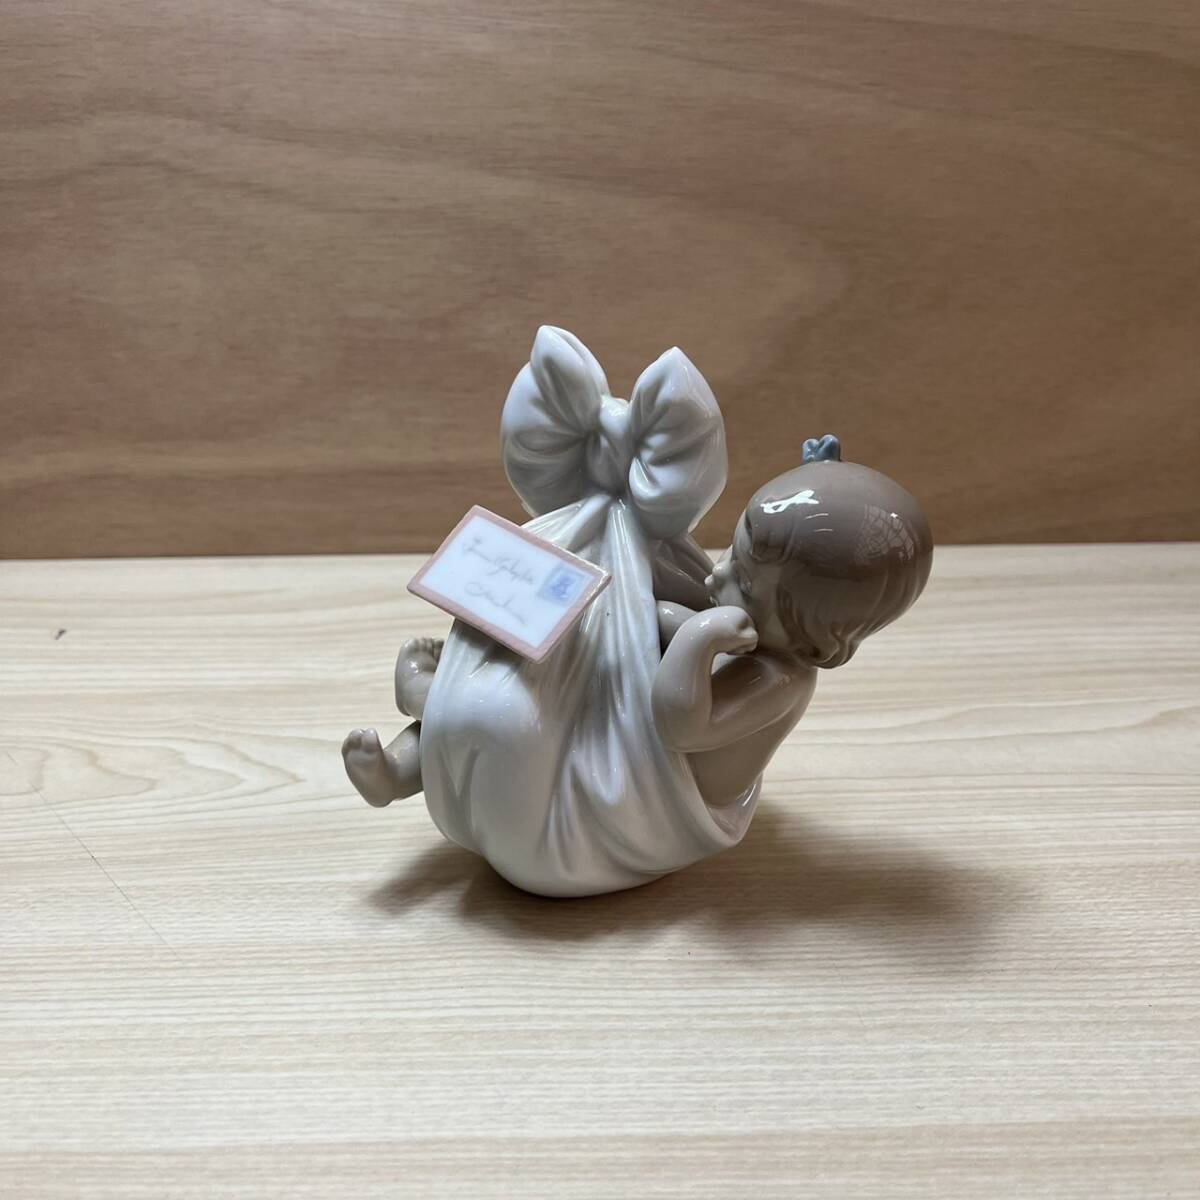 ☆LLADRO リアドロ 陶器人形 ドール 女の子 西洋陶磁 置物 インテリア(中古品/現状品/保管品)☆ の画像1